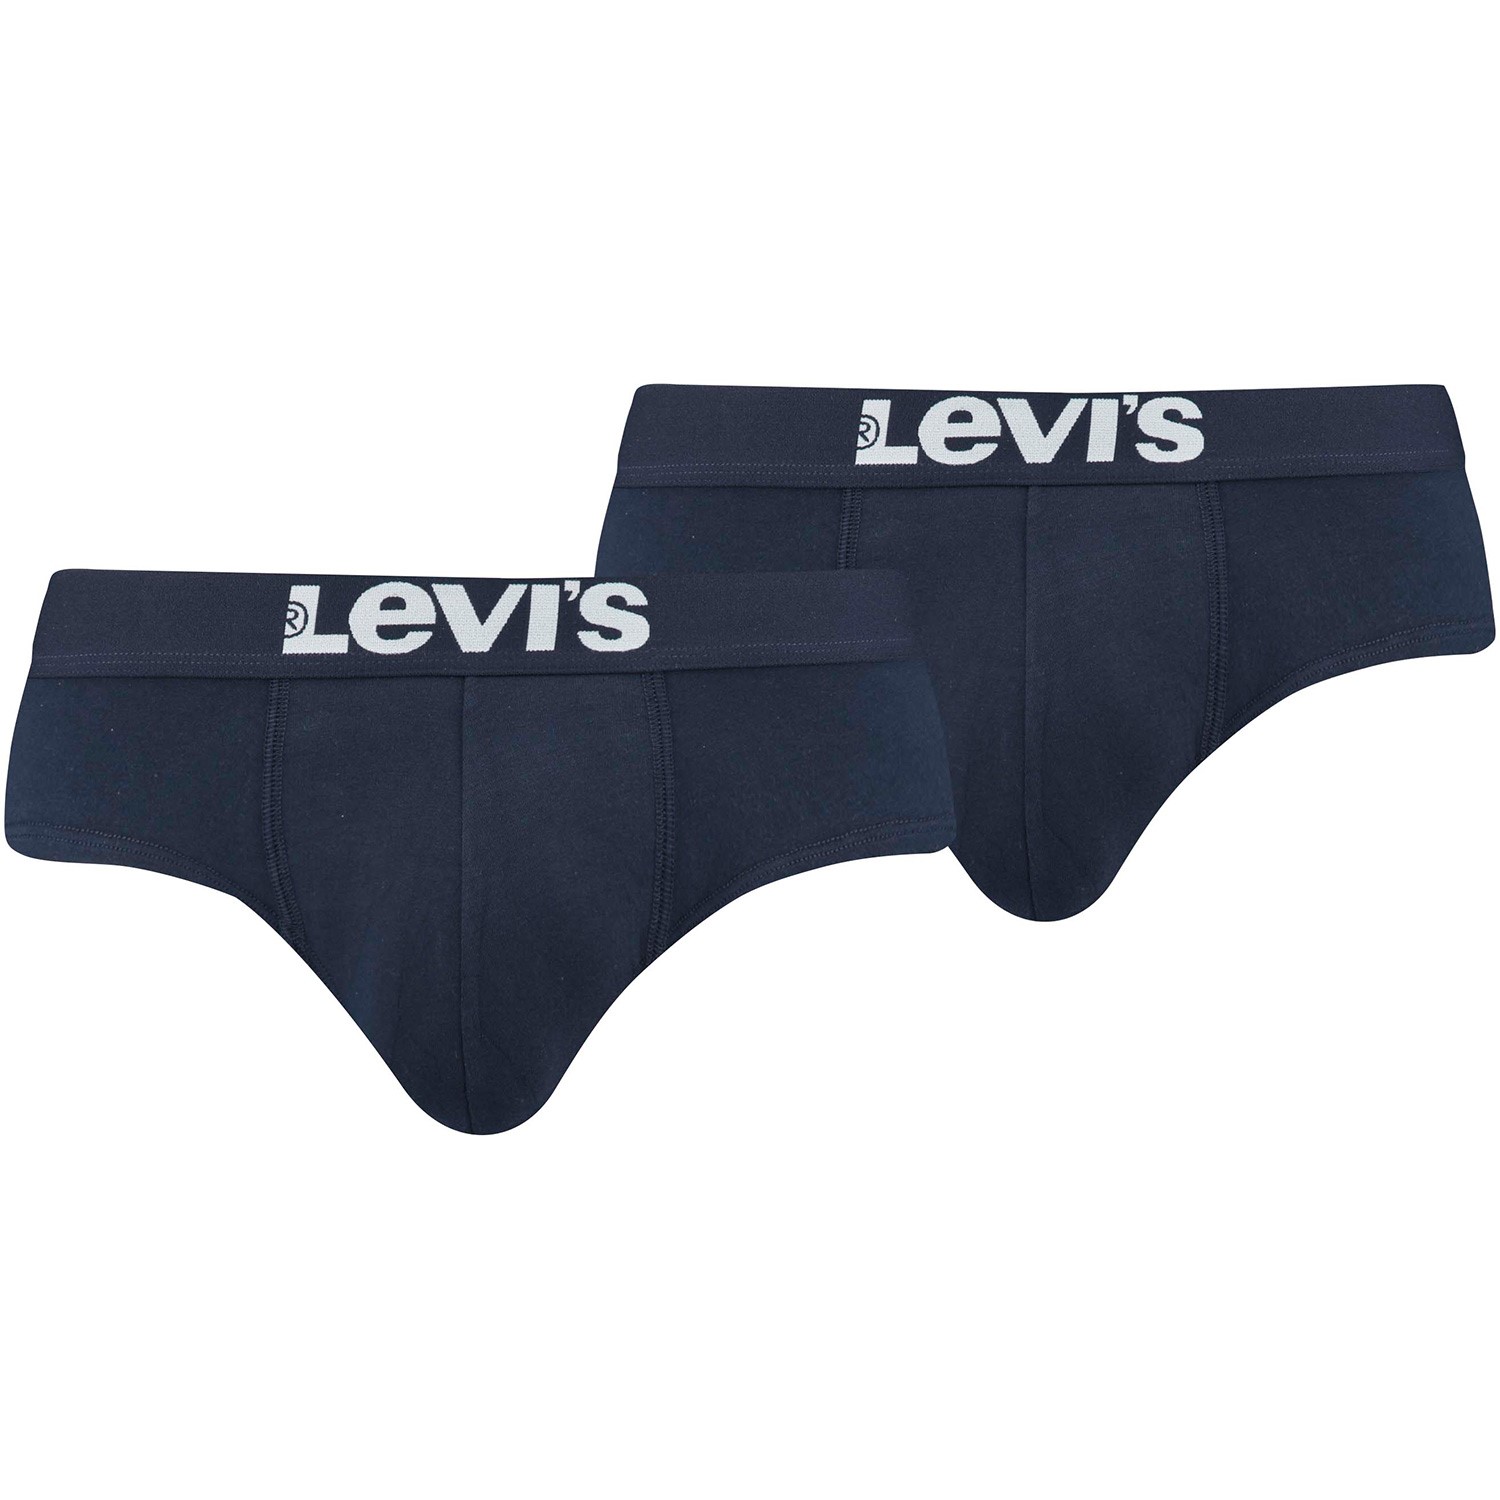 2-Pack Levis Base Brief - Brief - Trunks - Underwear 